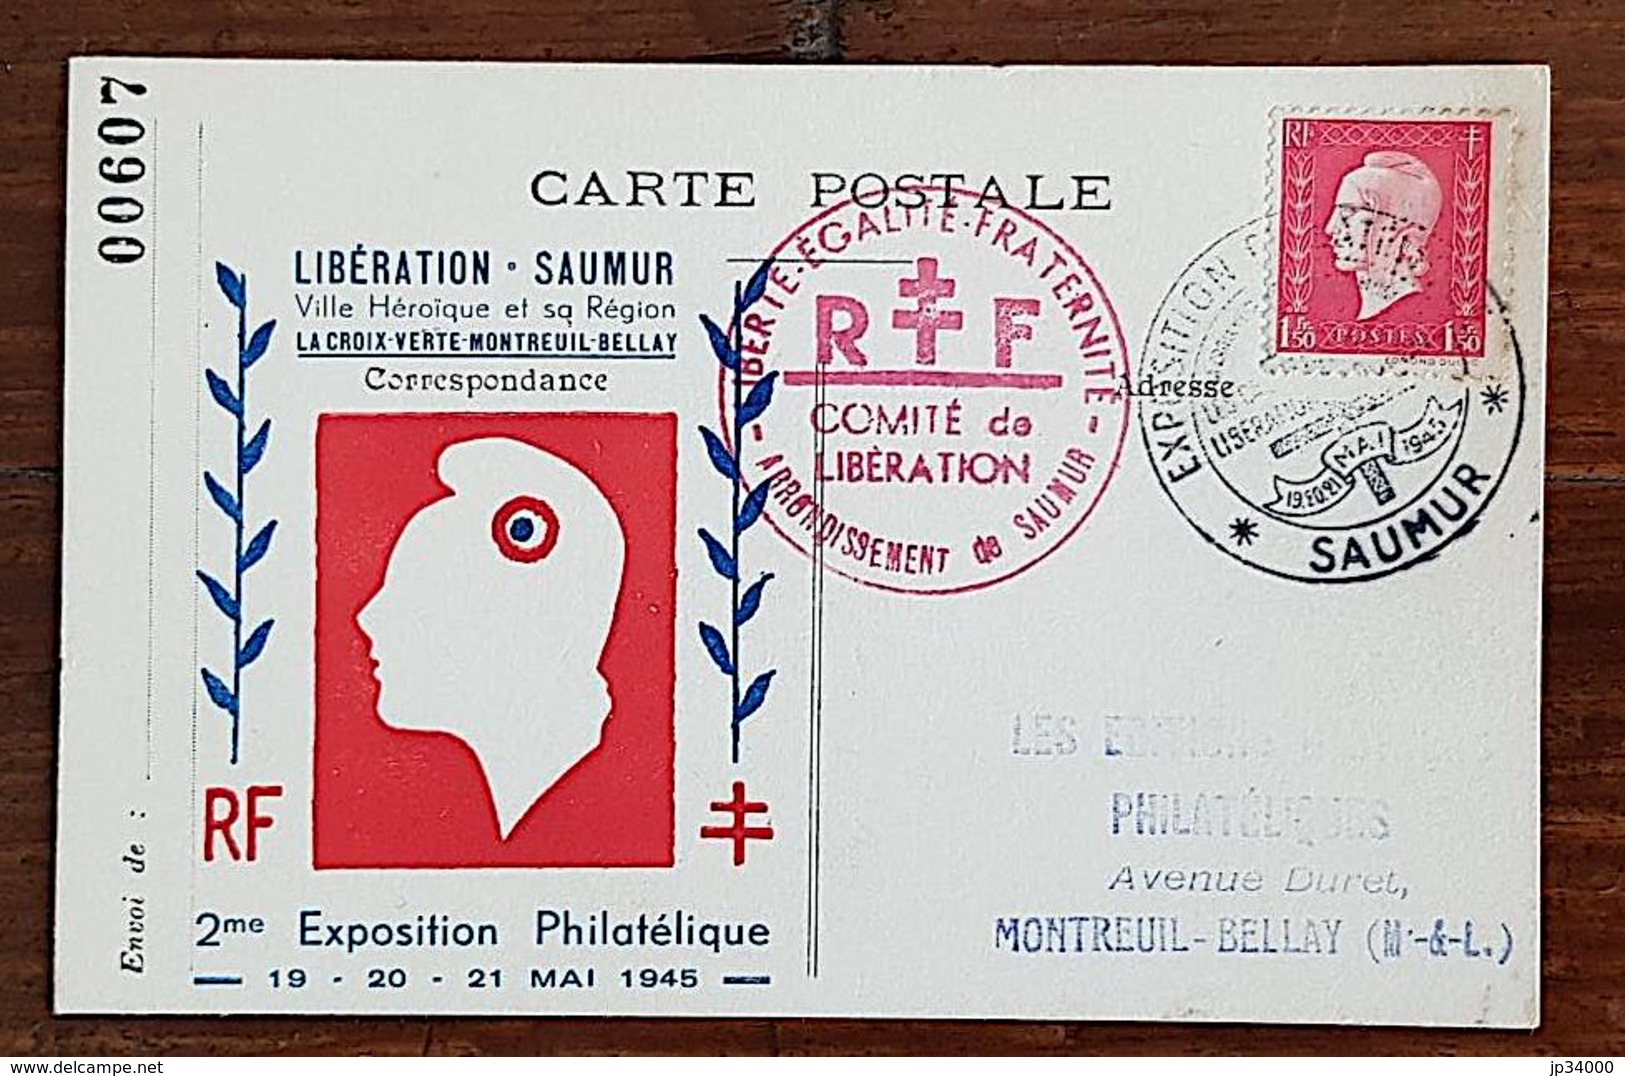 FRANCE Liberation SAUMUR. Ville Heroique Et Sa Région. Exposition Philatelique 19 Au 21 MAI 1945. Cachet Saumur - Guerre Mondiale (Seconde)